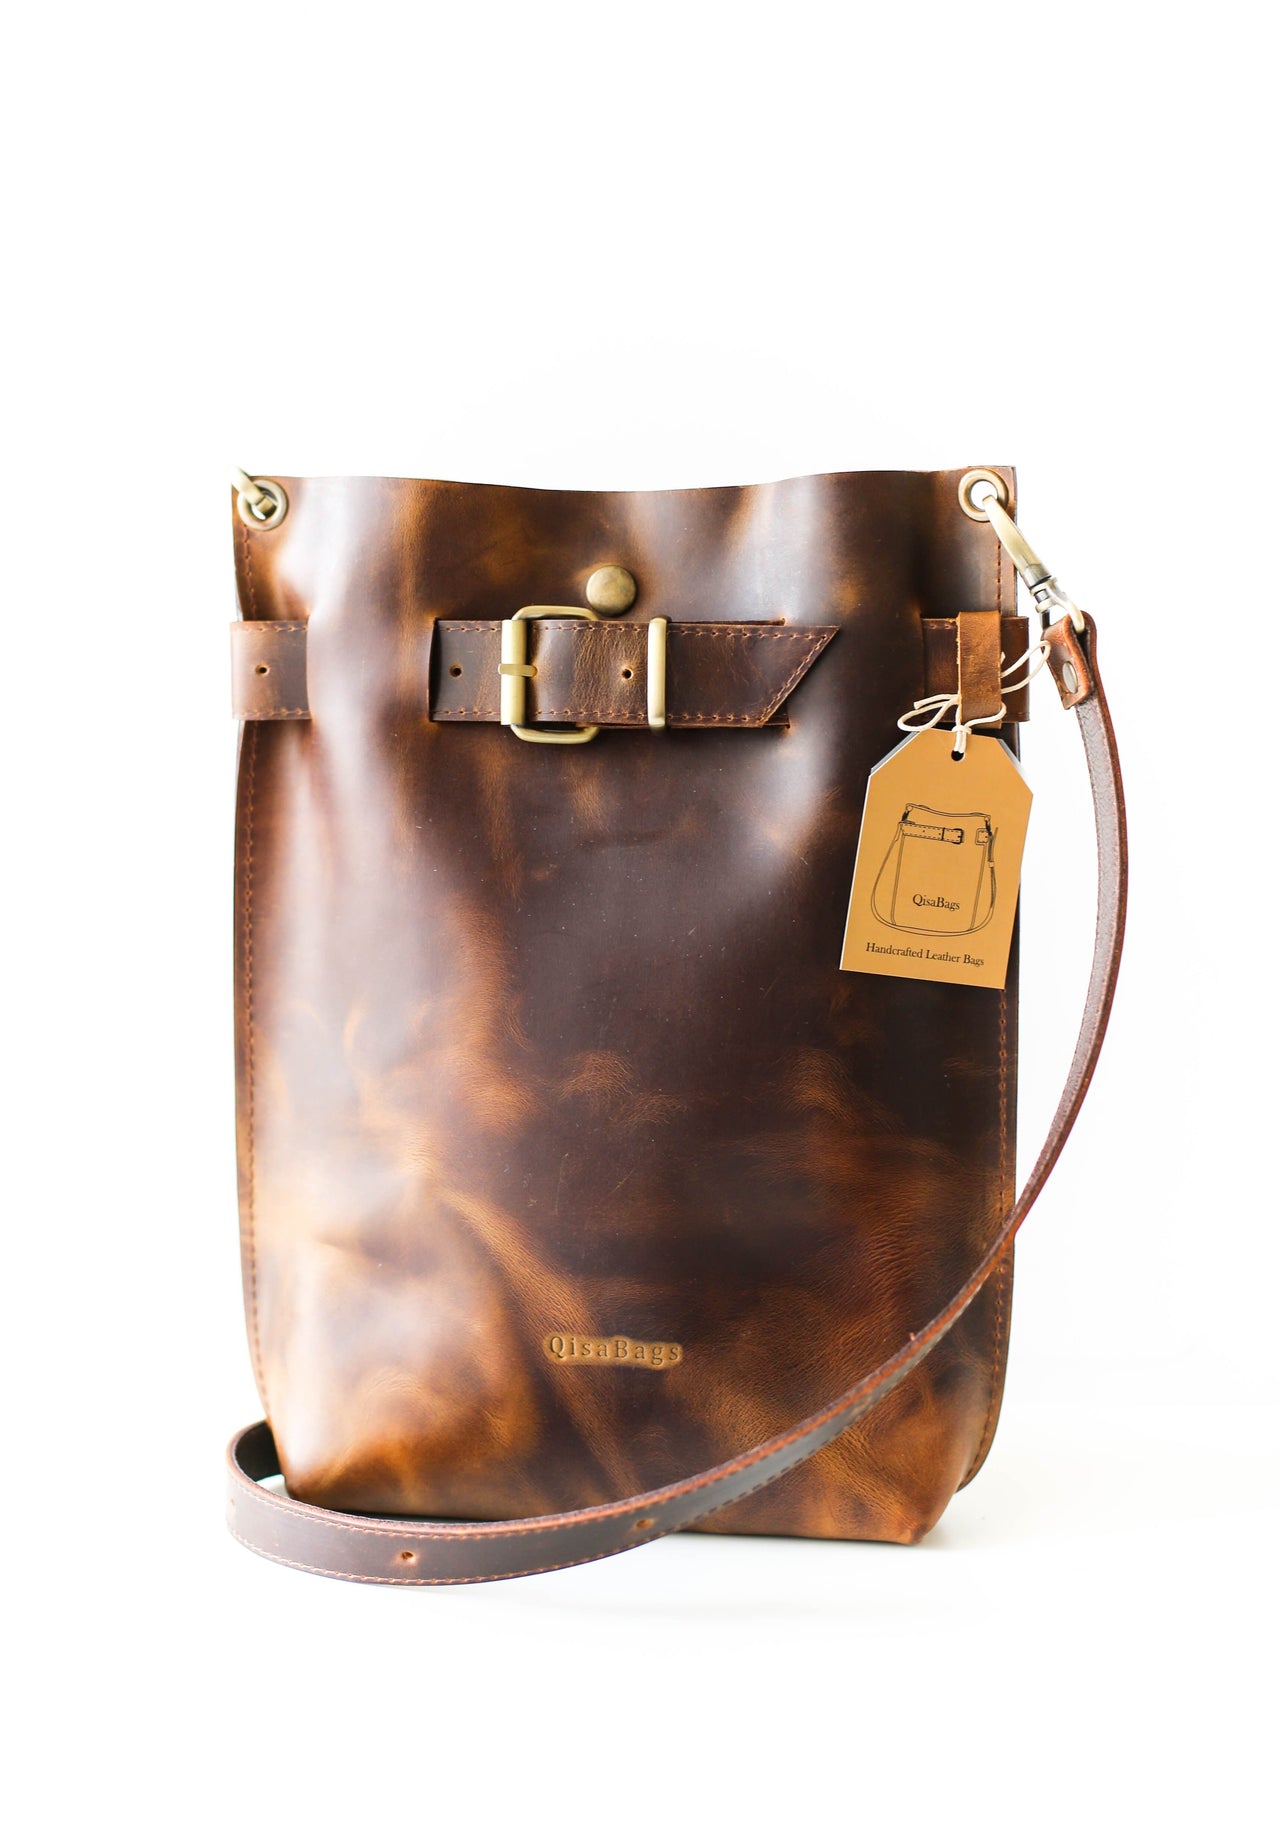 2023 Women's shoulder bag, bracelet bag, handbag, backpack, latest